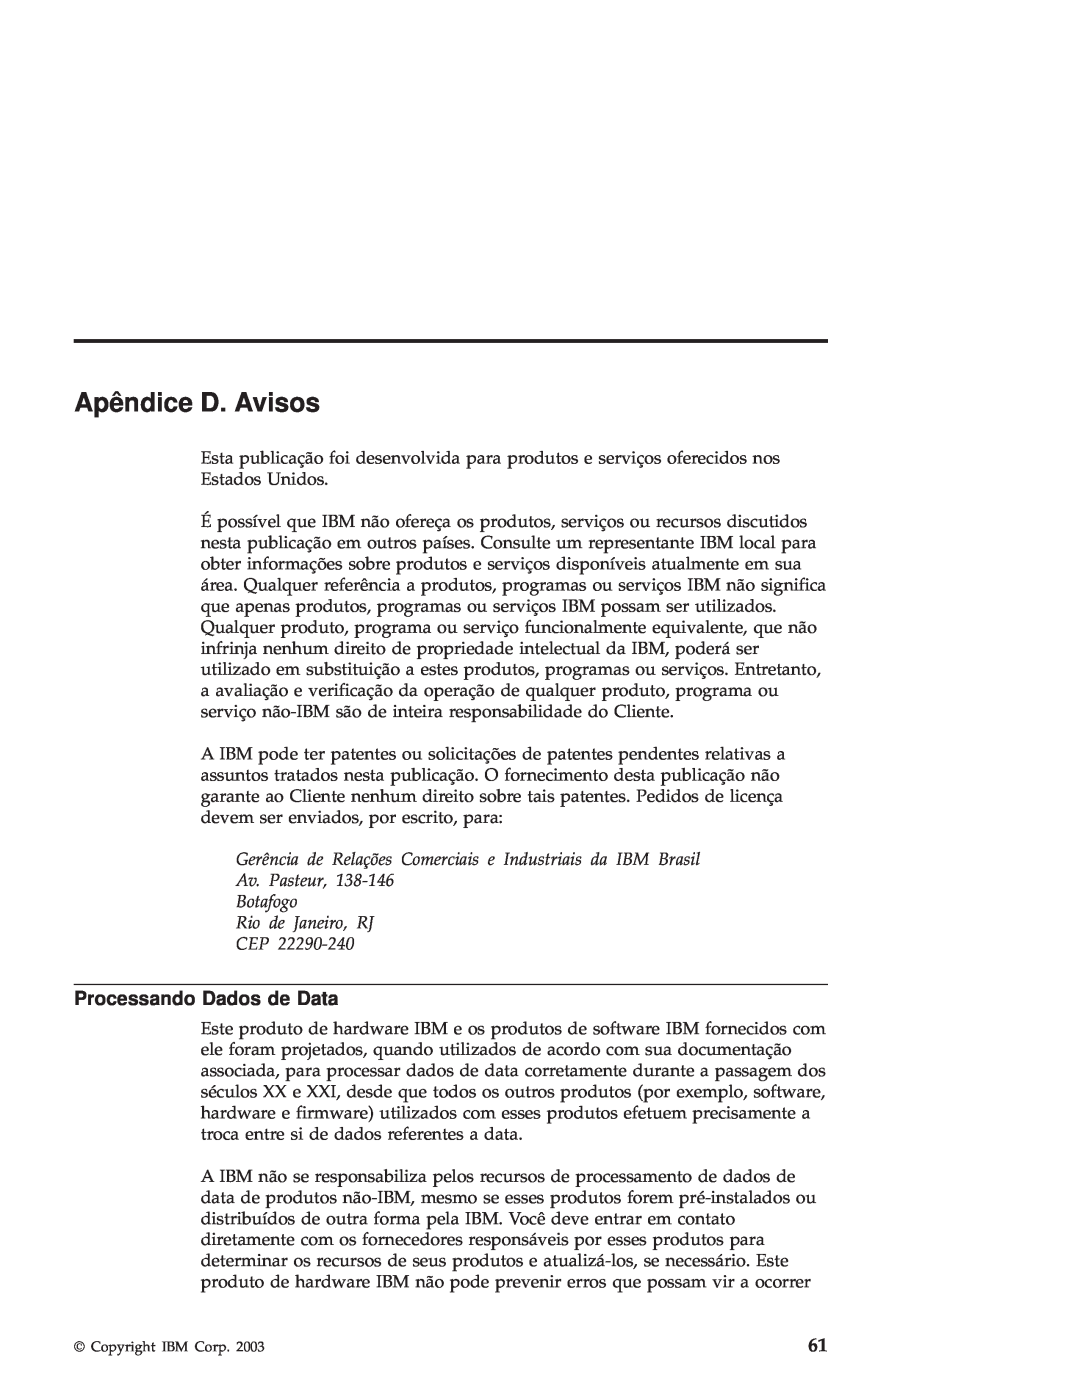 IBM R50 manual Apêndice D. Avisos, Processando Dados de Data, Av. Pasteur, Botafogo Rio de Janeiro, RJ CEP 